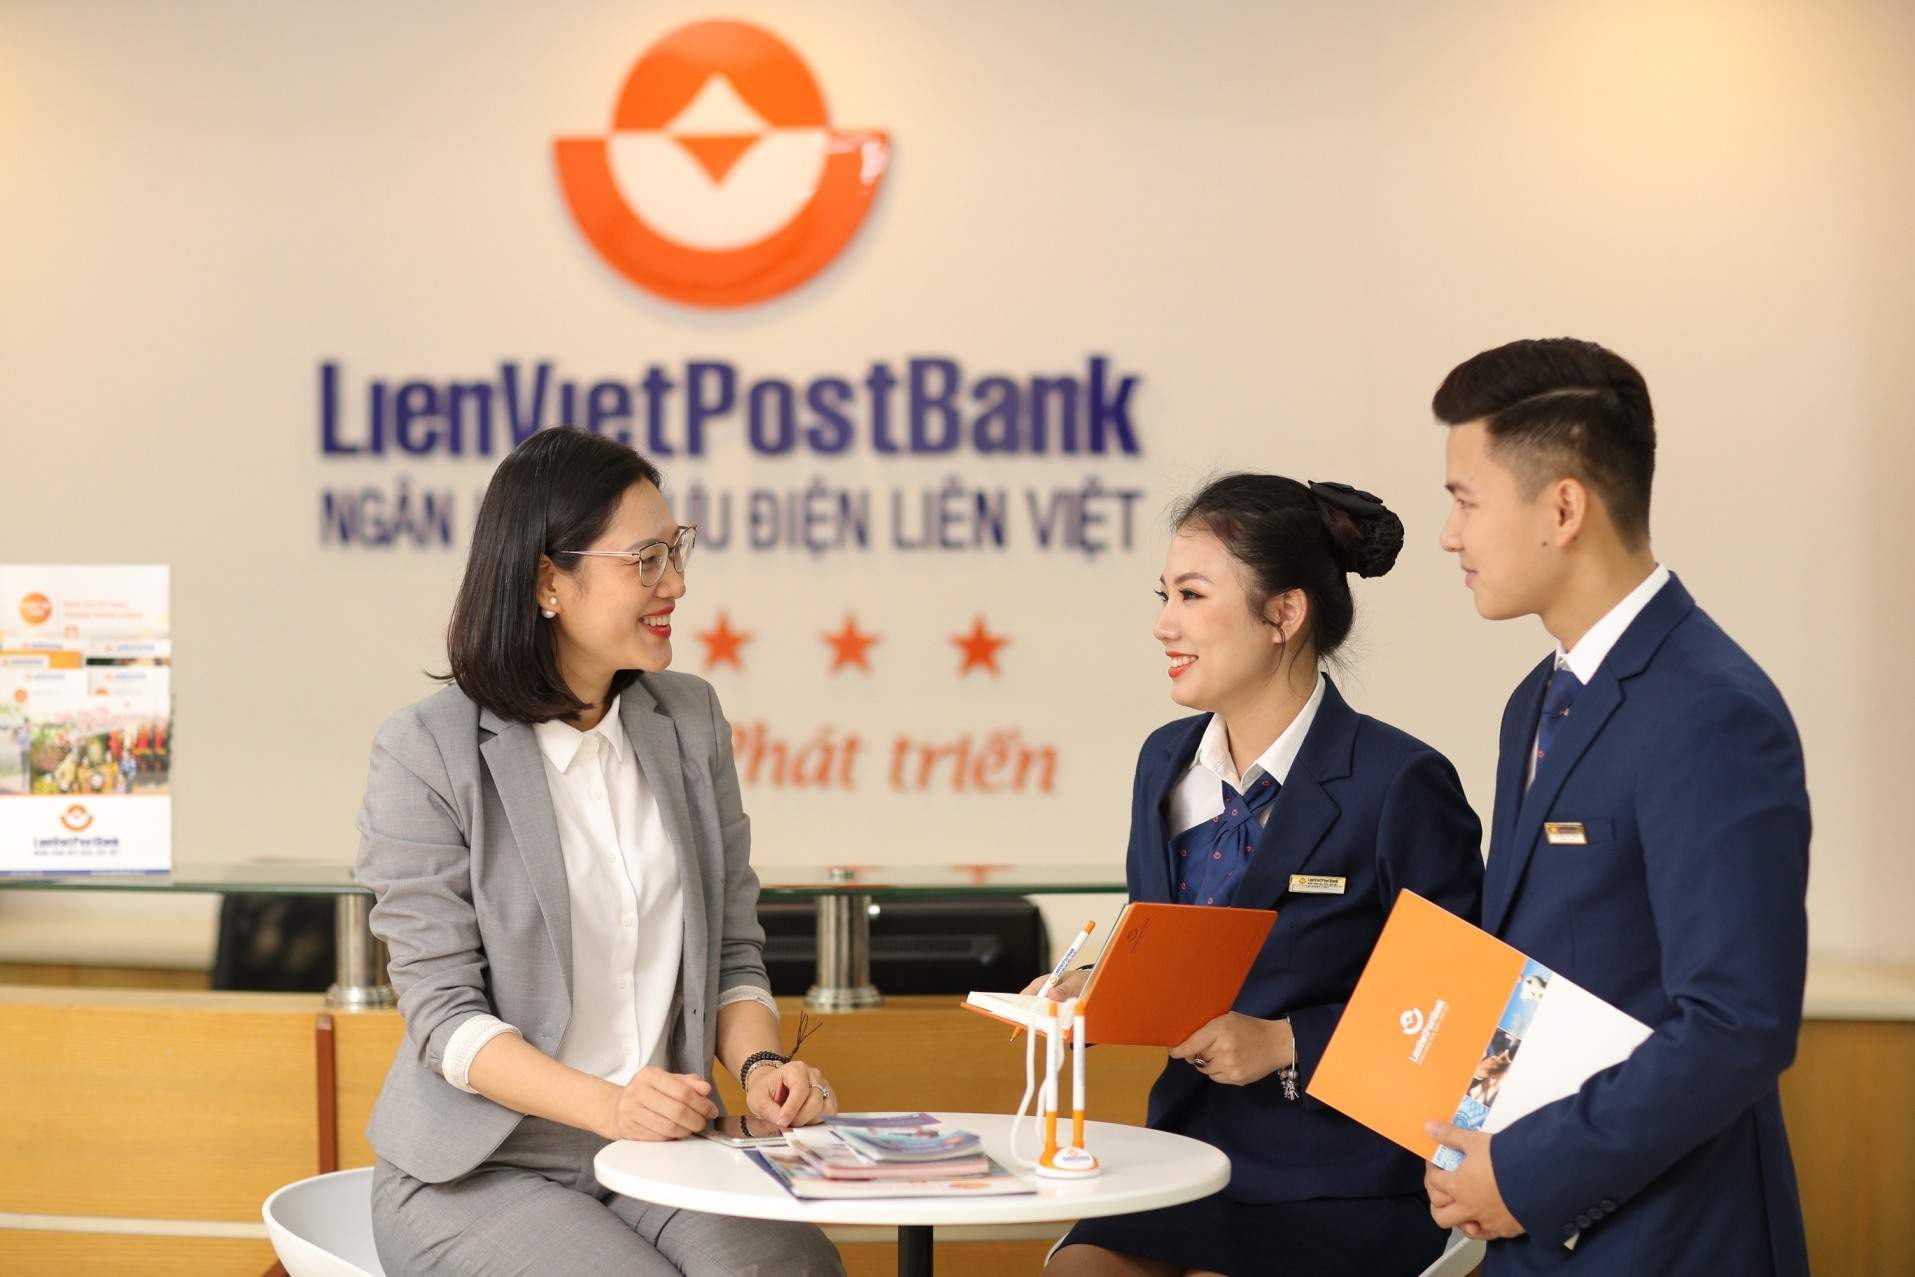 Lien Viet Postbank